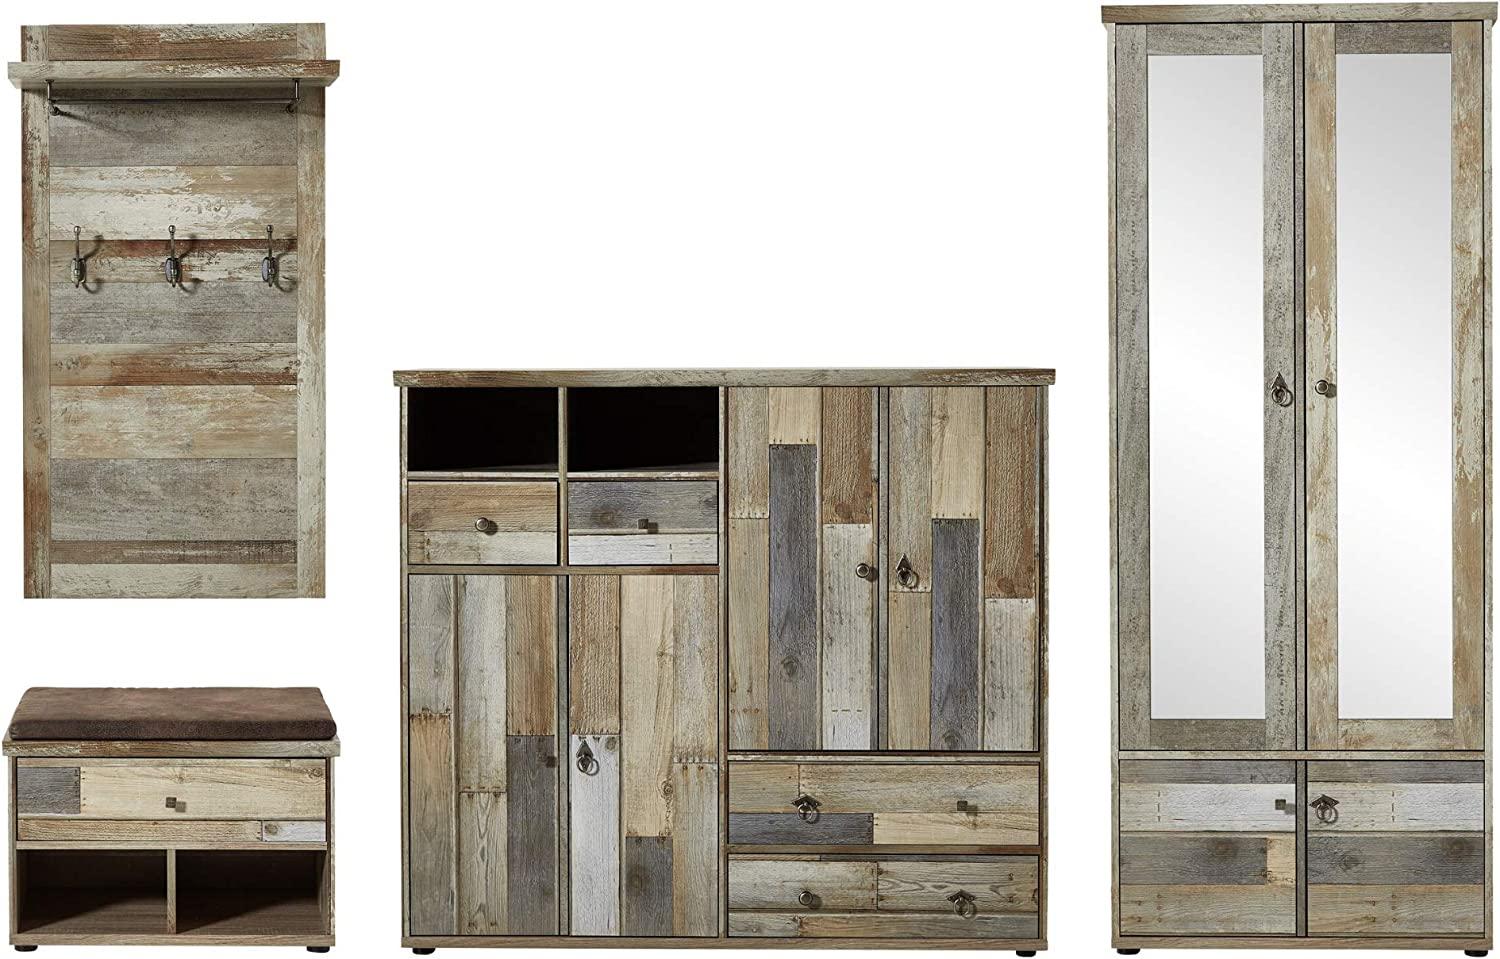 Bonanza Vintage Garderoben Set in Driftwood Optik - Retro Flurgarderobe für Ihren Eingangsbereich - 305 x 188 x 40 cm (B/H/T) Bild 1